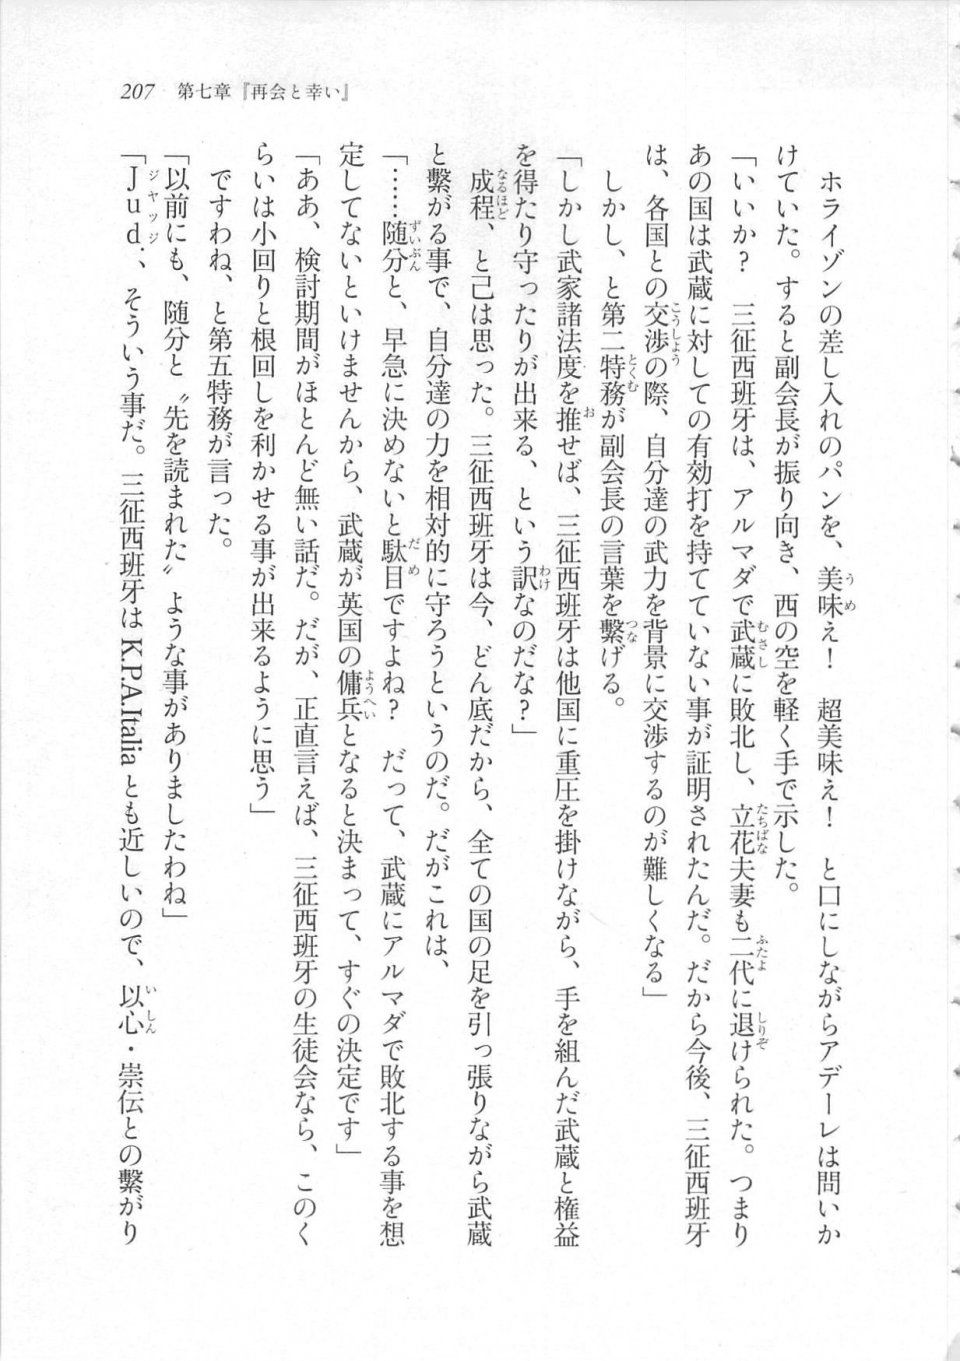 Kyoukai Senjou no Horizon LN Sidestory Vol 3 - Photo #211